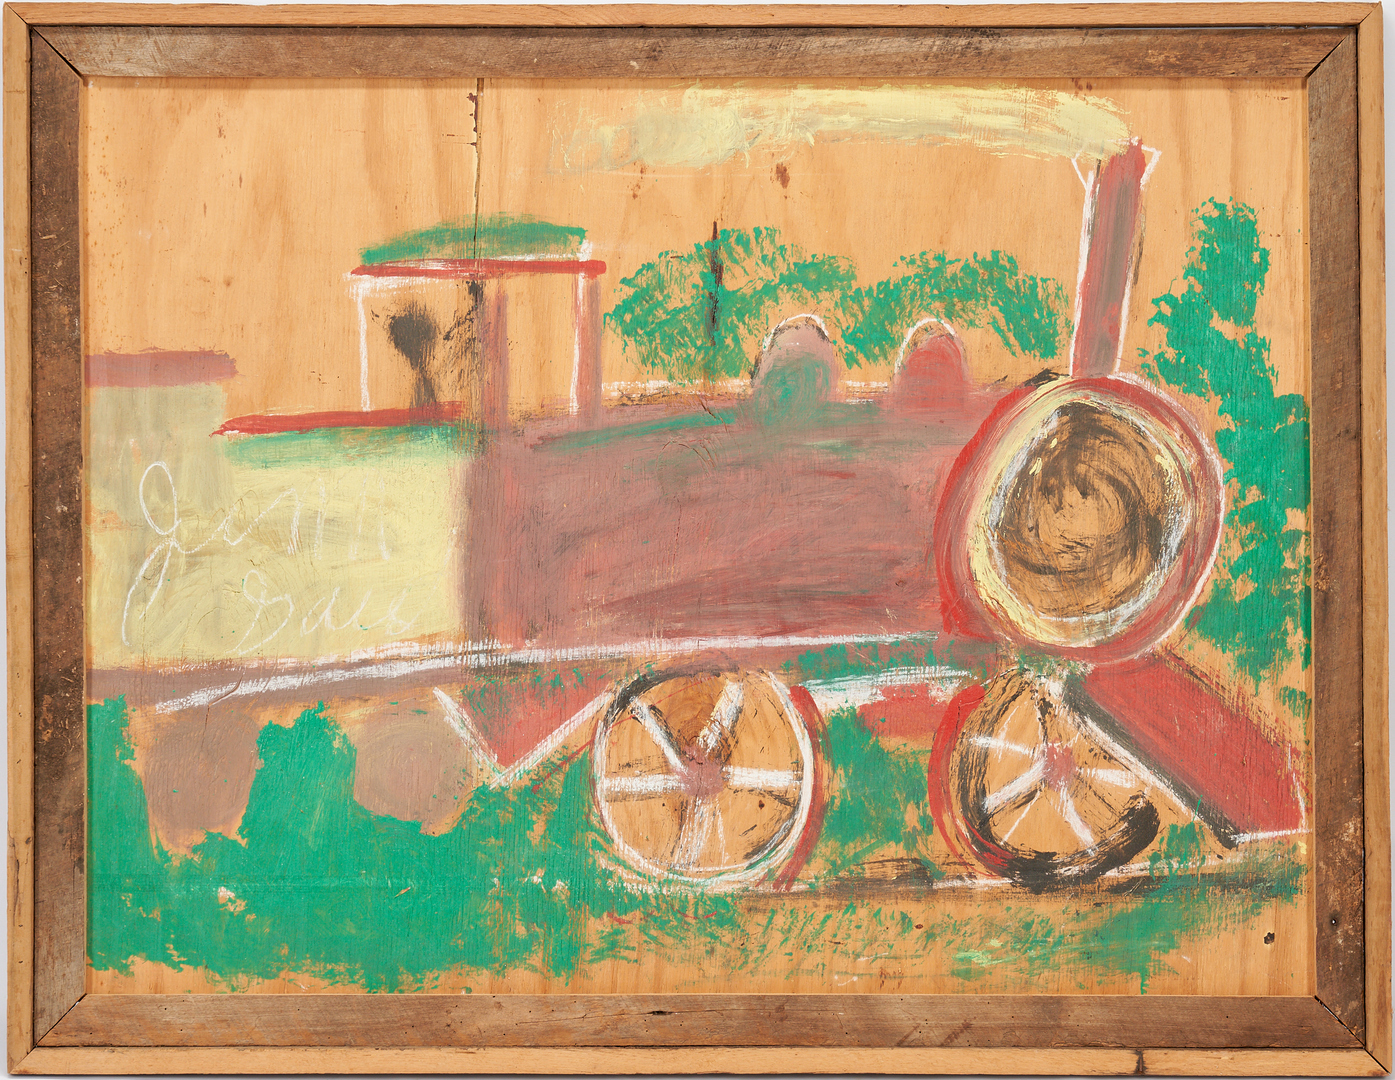 Lot 171: Large J.L. Sudduth Train Painting